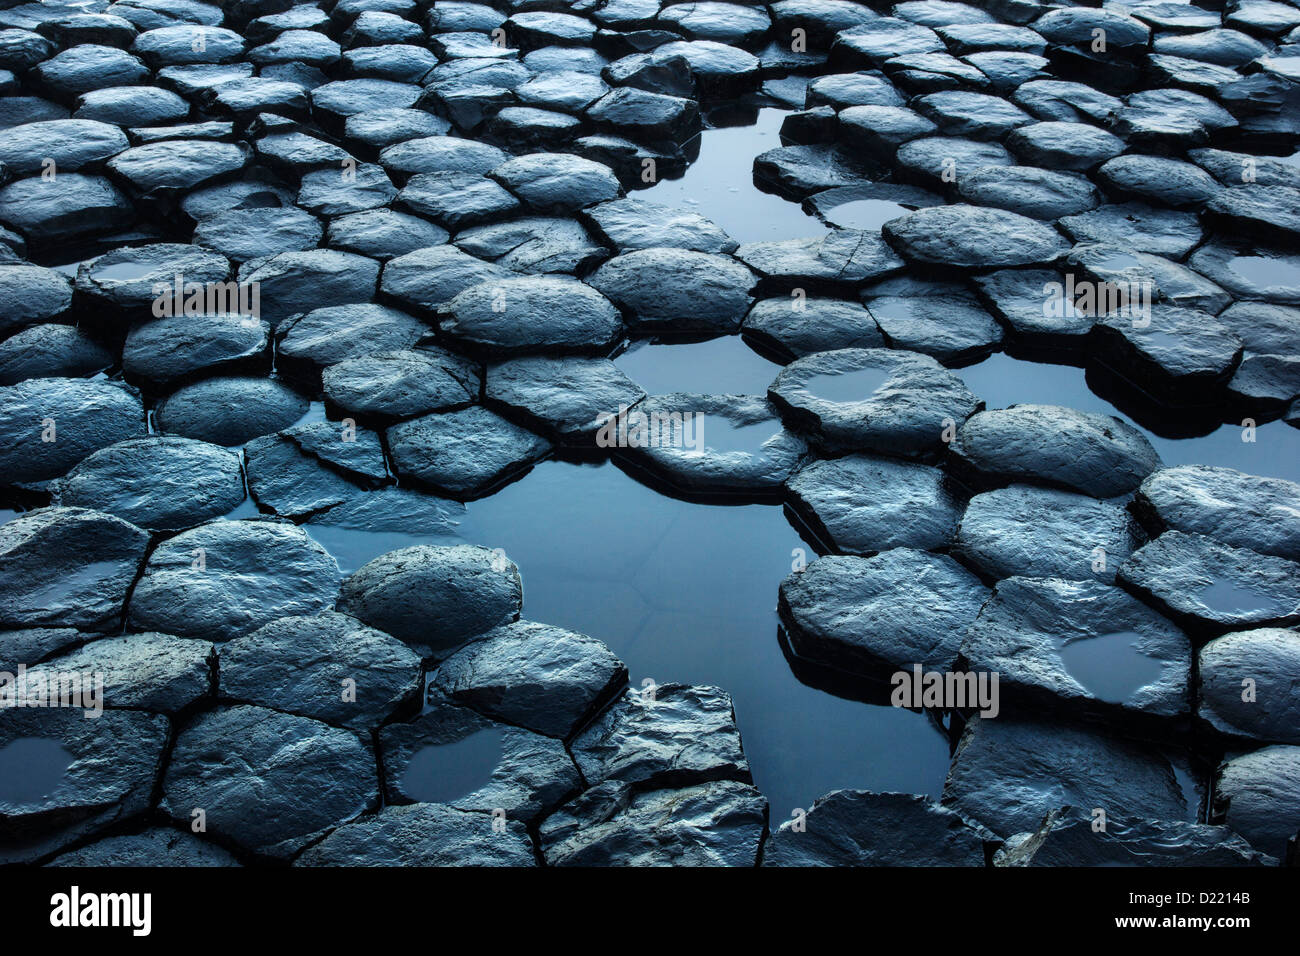 Dettagli della esagonale rocce basaltiche motivo dal famoso Giant's Causeway UNESCO World Heritage Site in Irlanda del Nord. Foto Stock